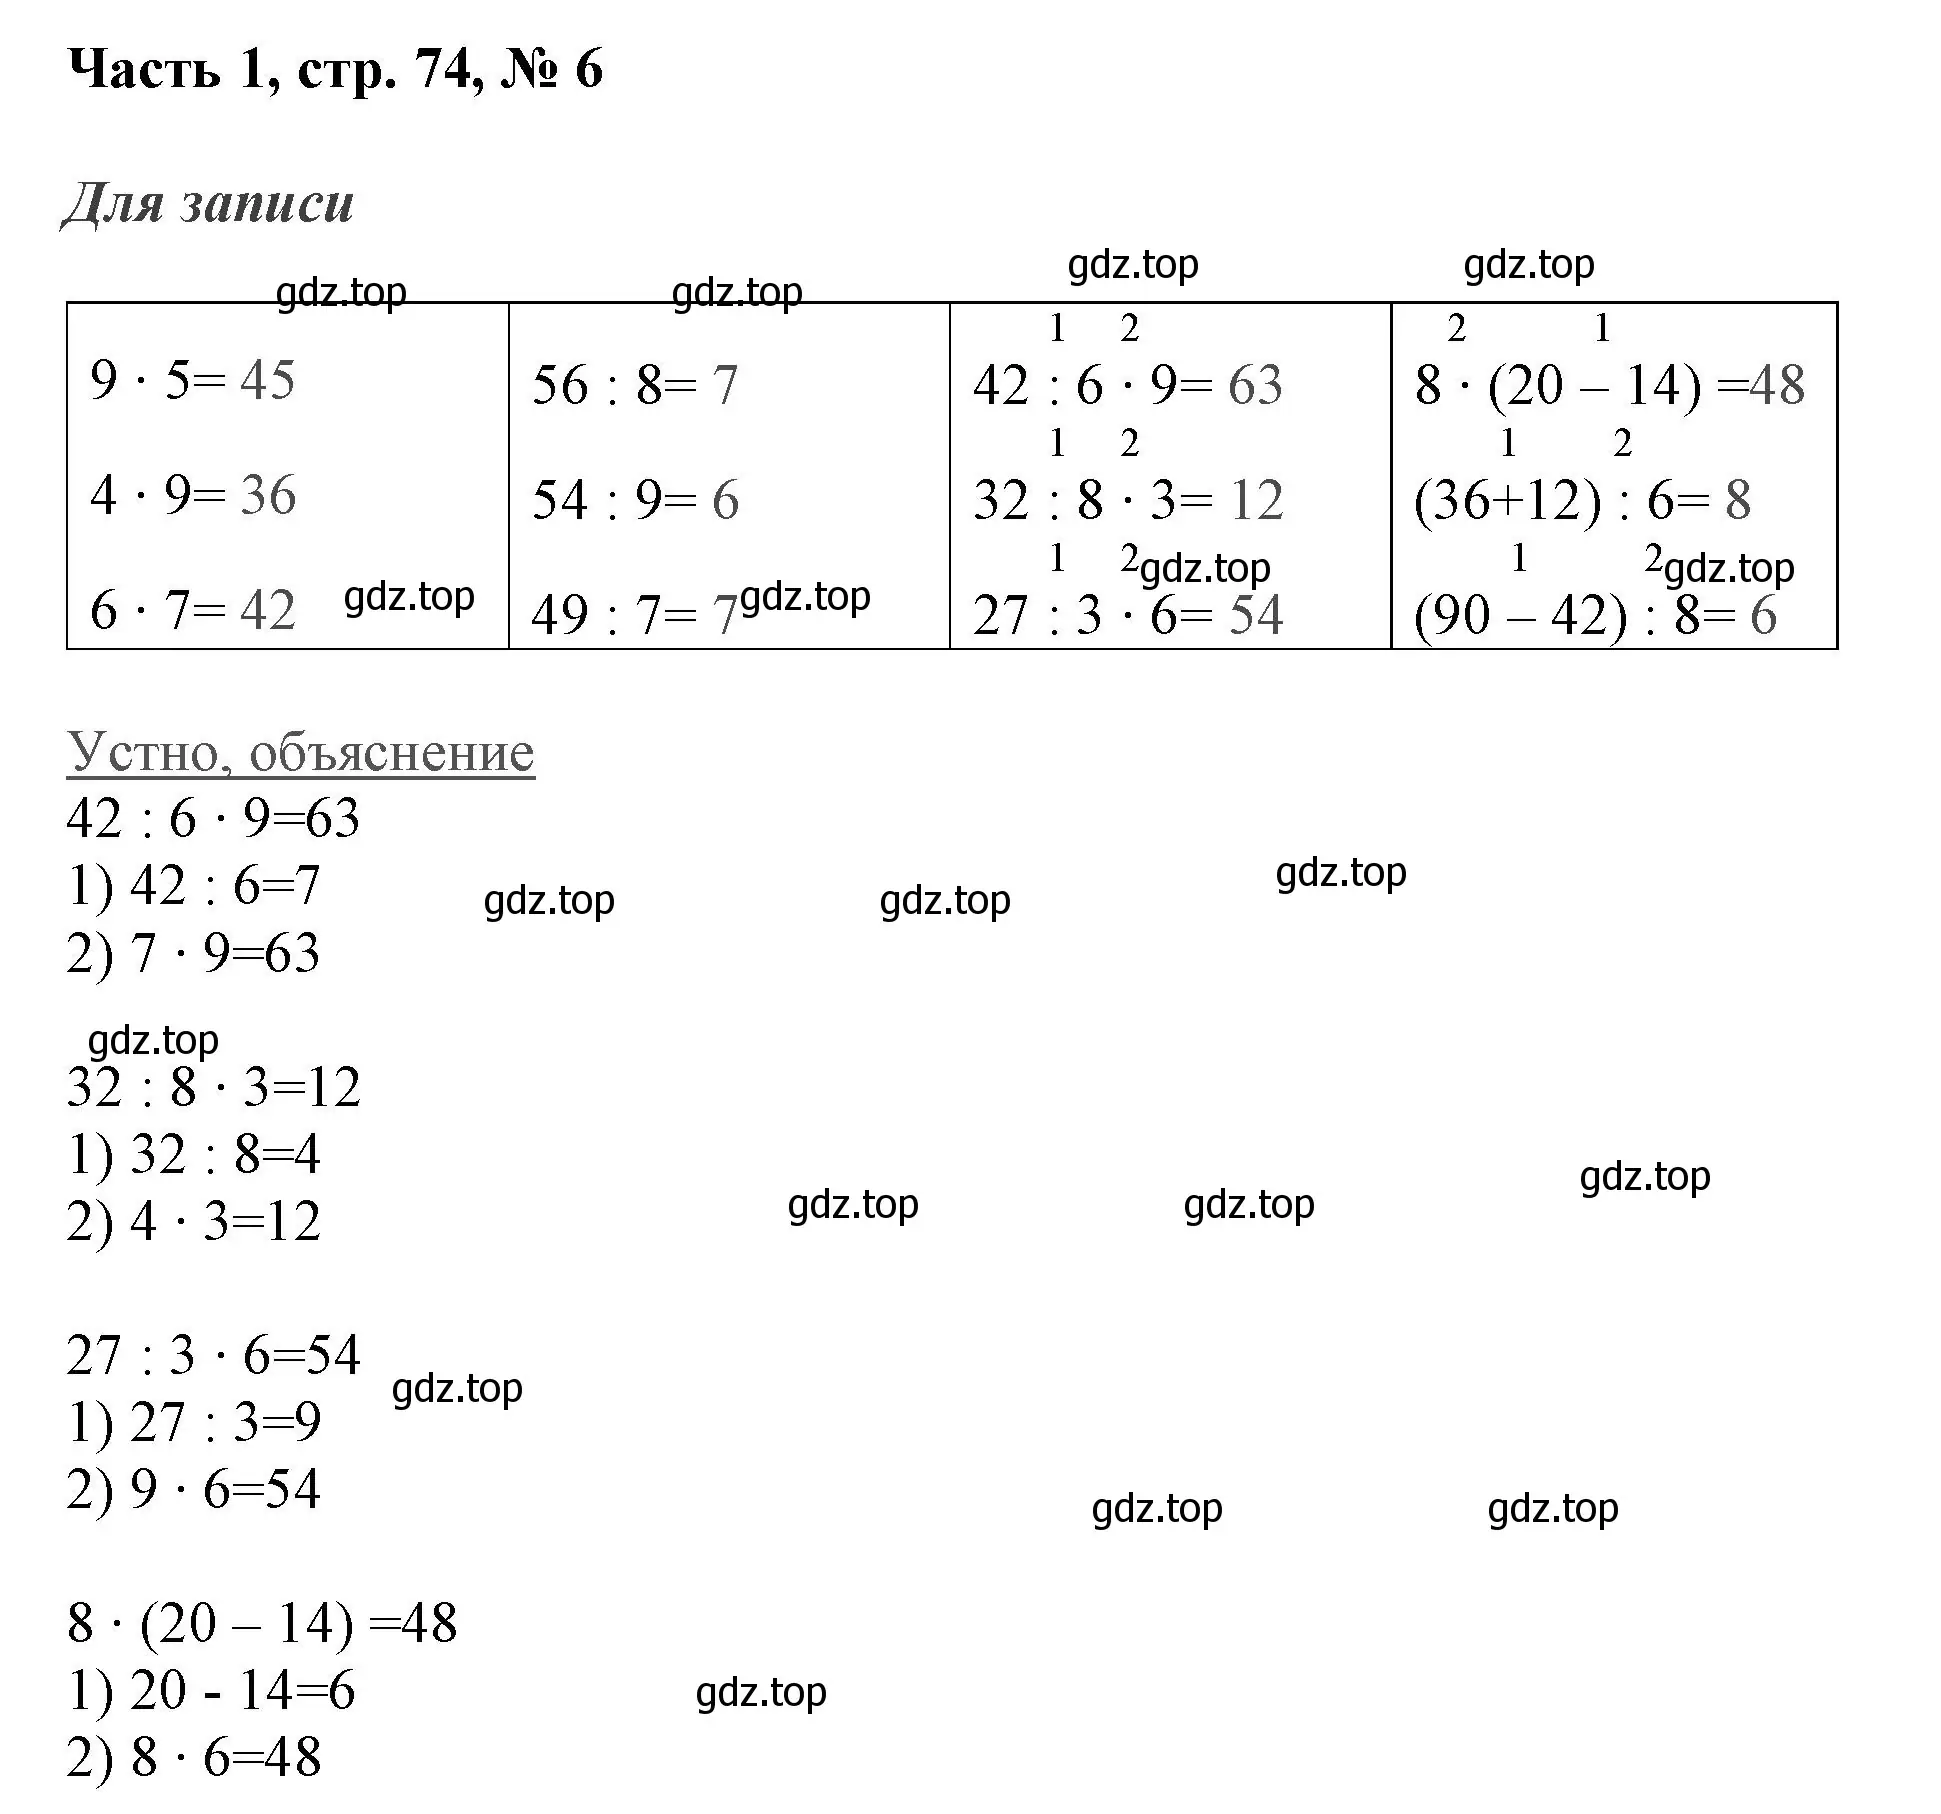 Решение номер 6 (страница 74) гдз по математике 3 класс Моро, Бантова, учебник 1 часть